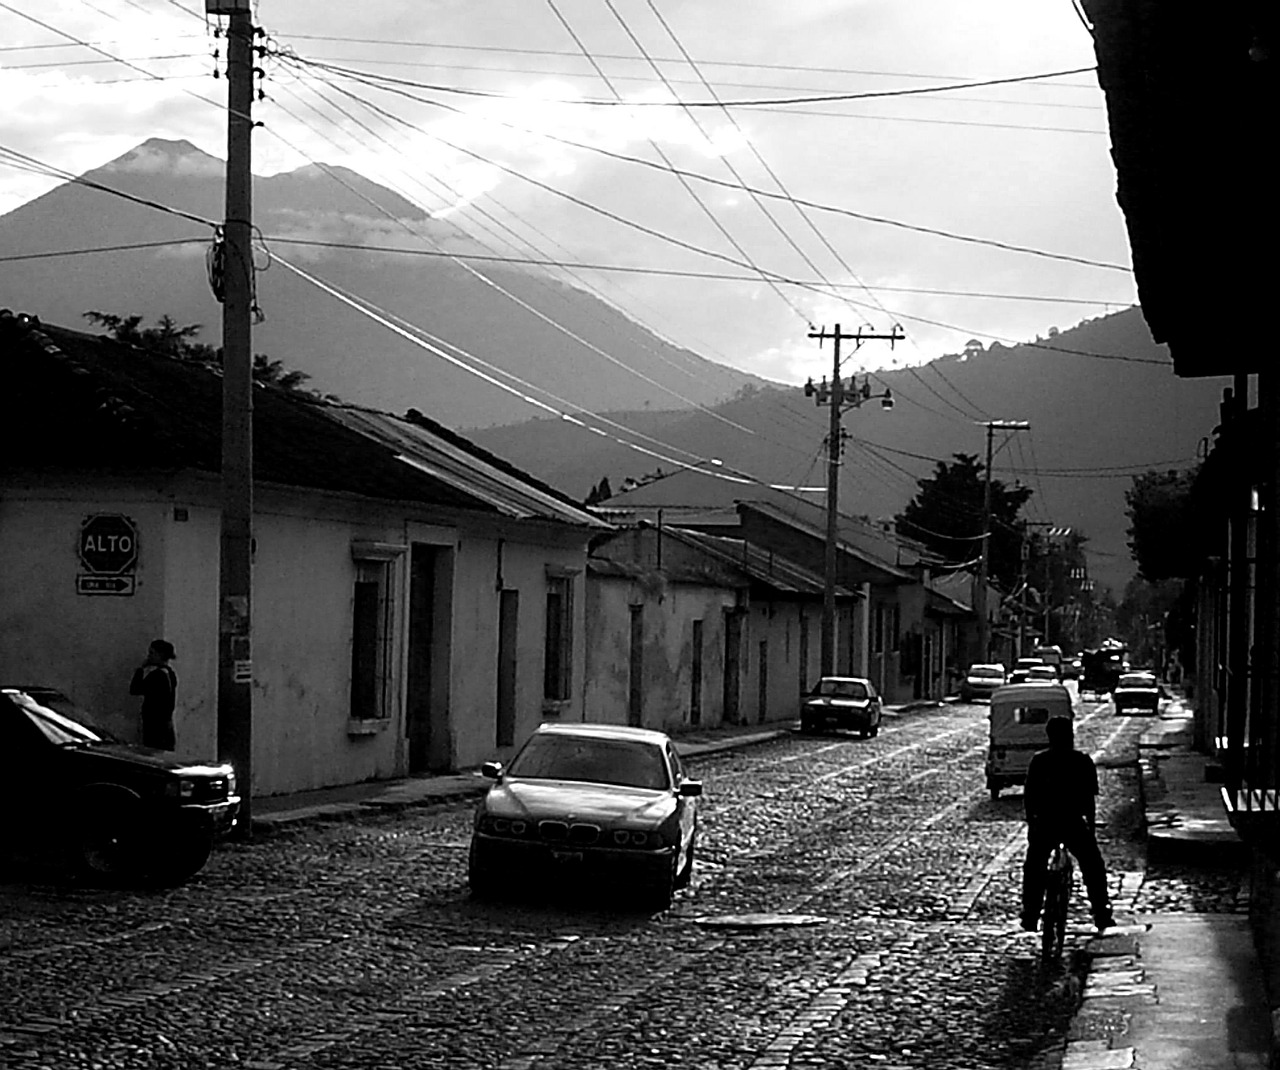 antigua guatemala central america free photo